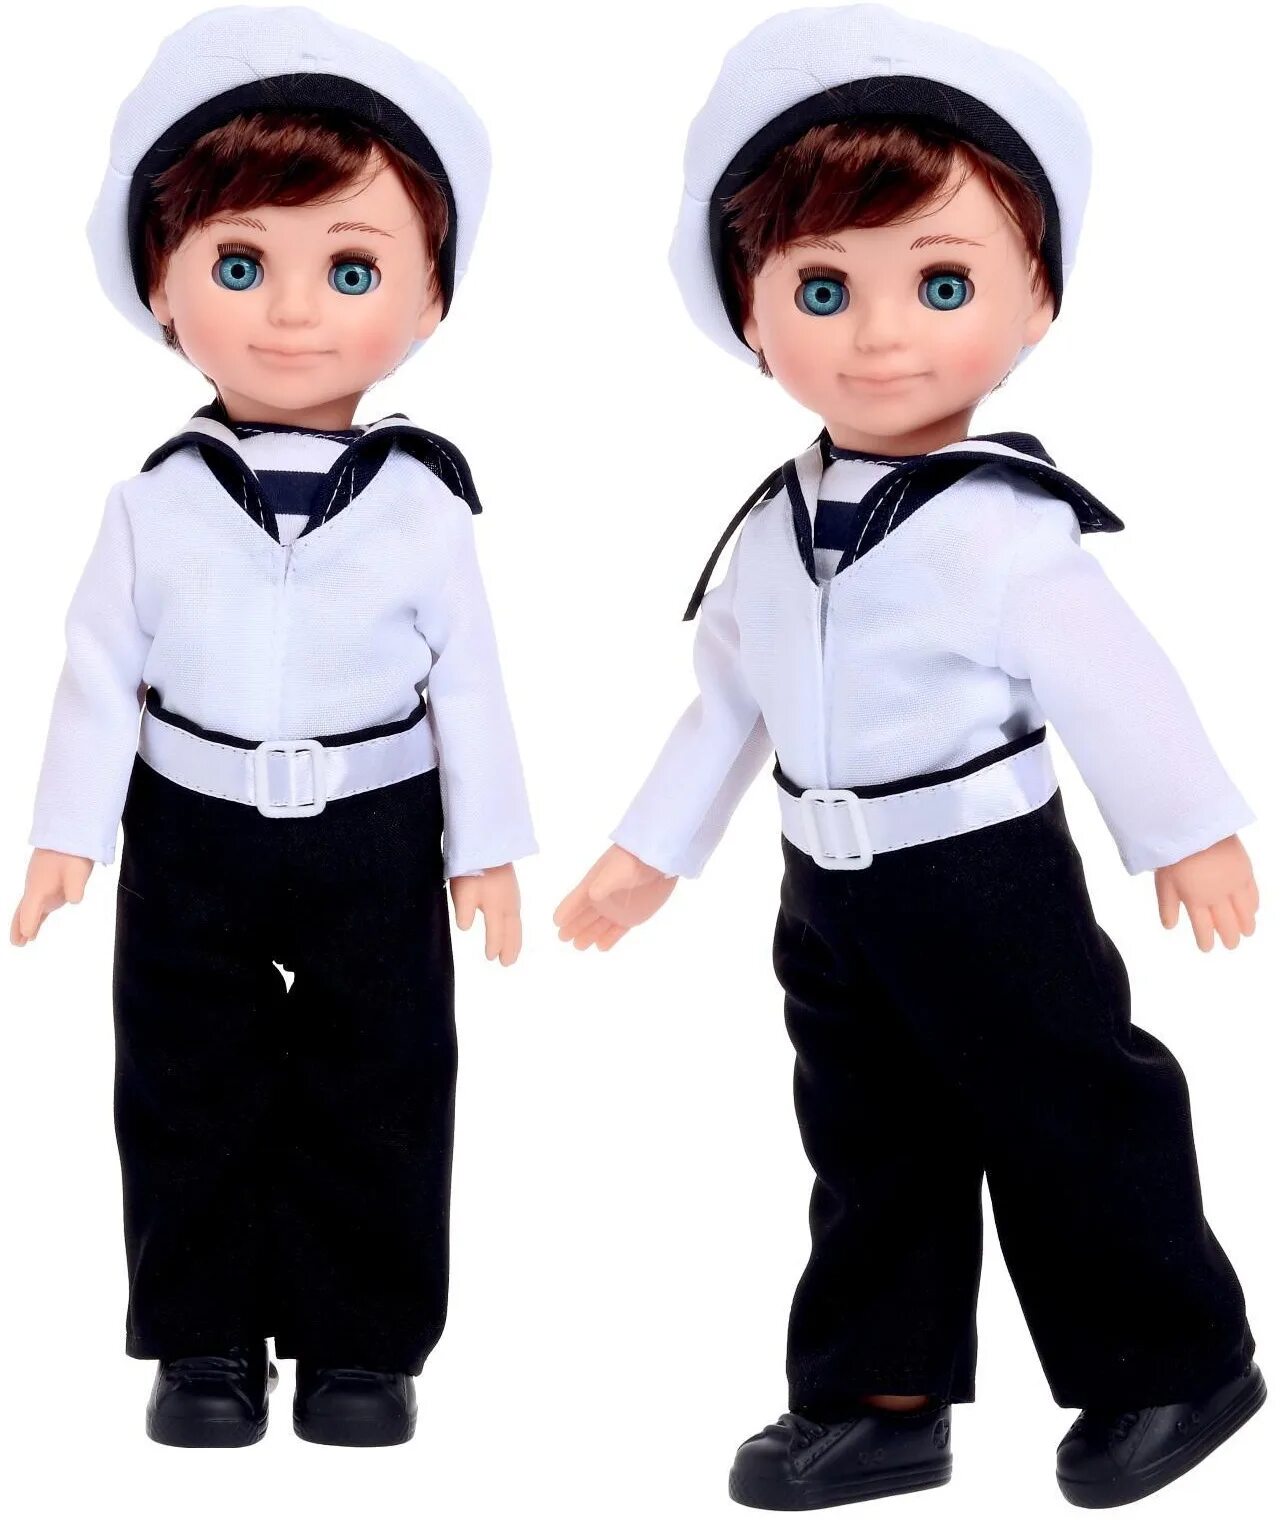 Картинки кукол мальчиков. Кукла "мальчик". Кукла матрос. Куклы по профессиям. Кукла моряк.